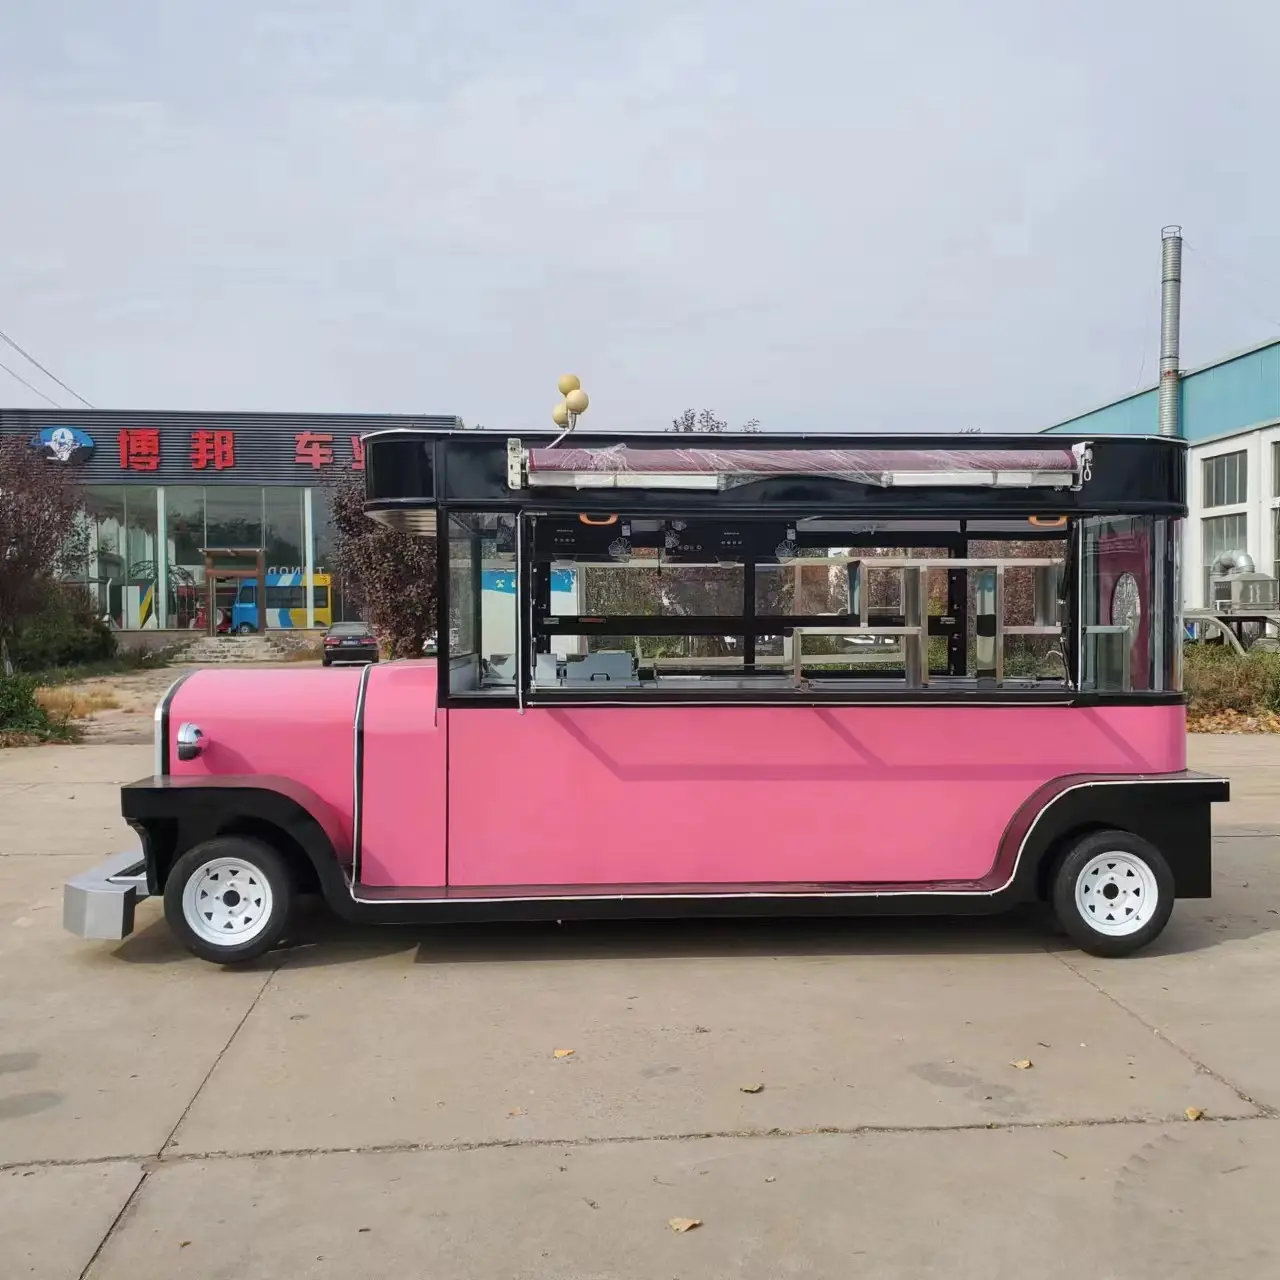 ขนมฮอทดอกเคลื่อนที่ รถบรรทุกอาหารจานด่วน ร้านกาแฟ รถบรรทุกไอศกรีม จําหน่ายรถบัส รถรับประทานอาหารไฟฟ้า